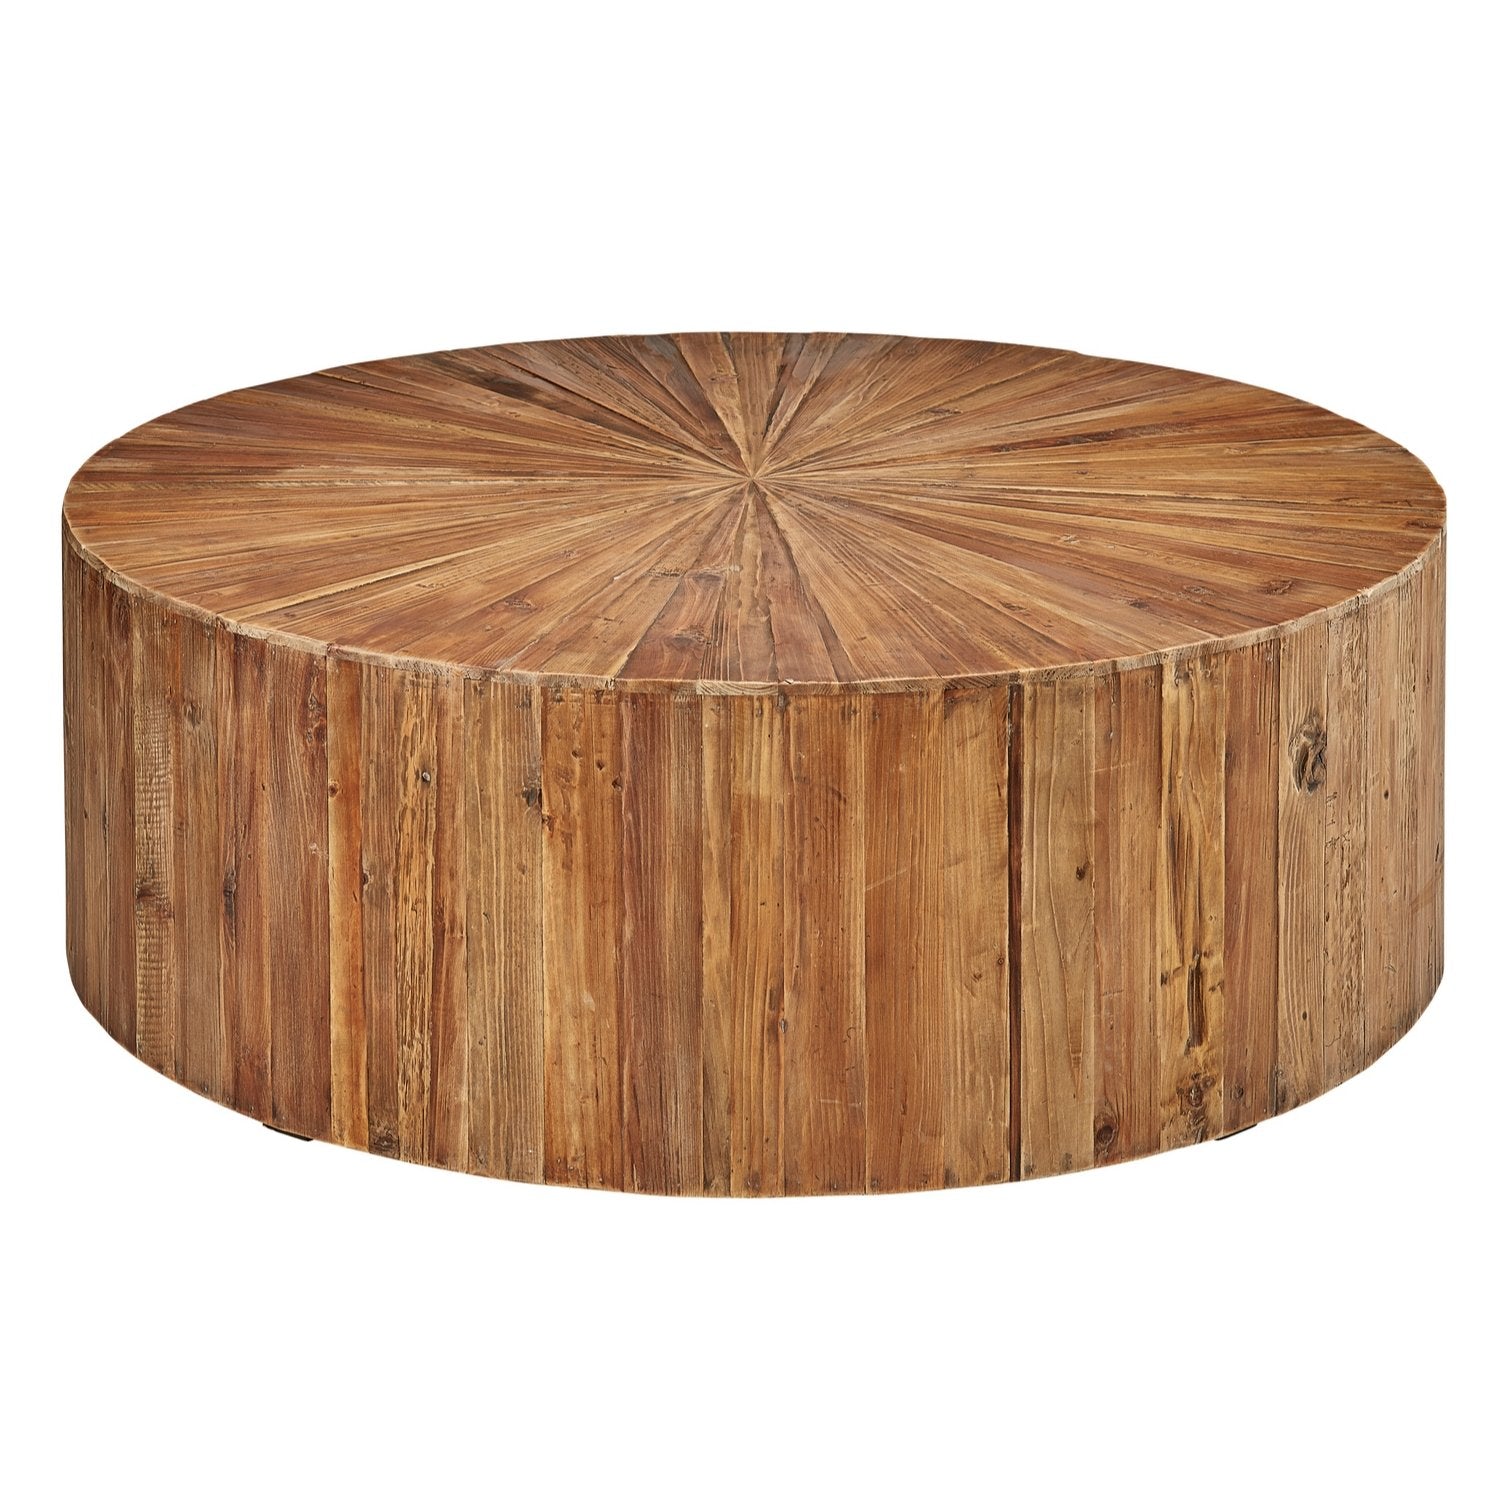 Sunburst Reclaimed Wood Coffee Table